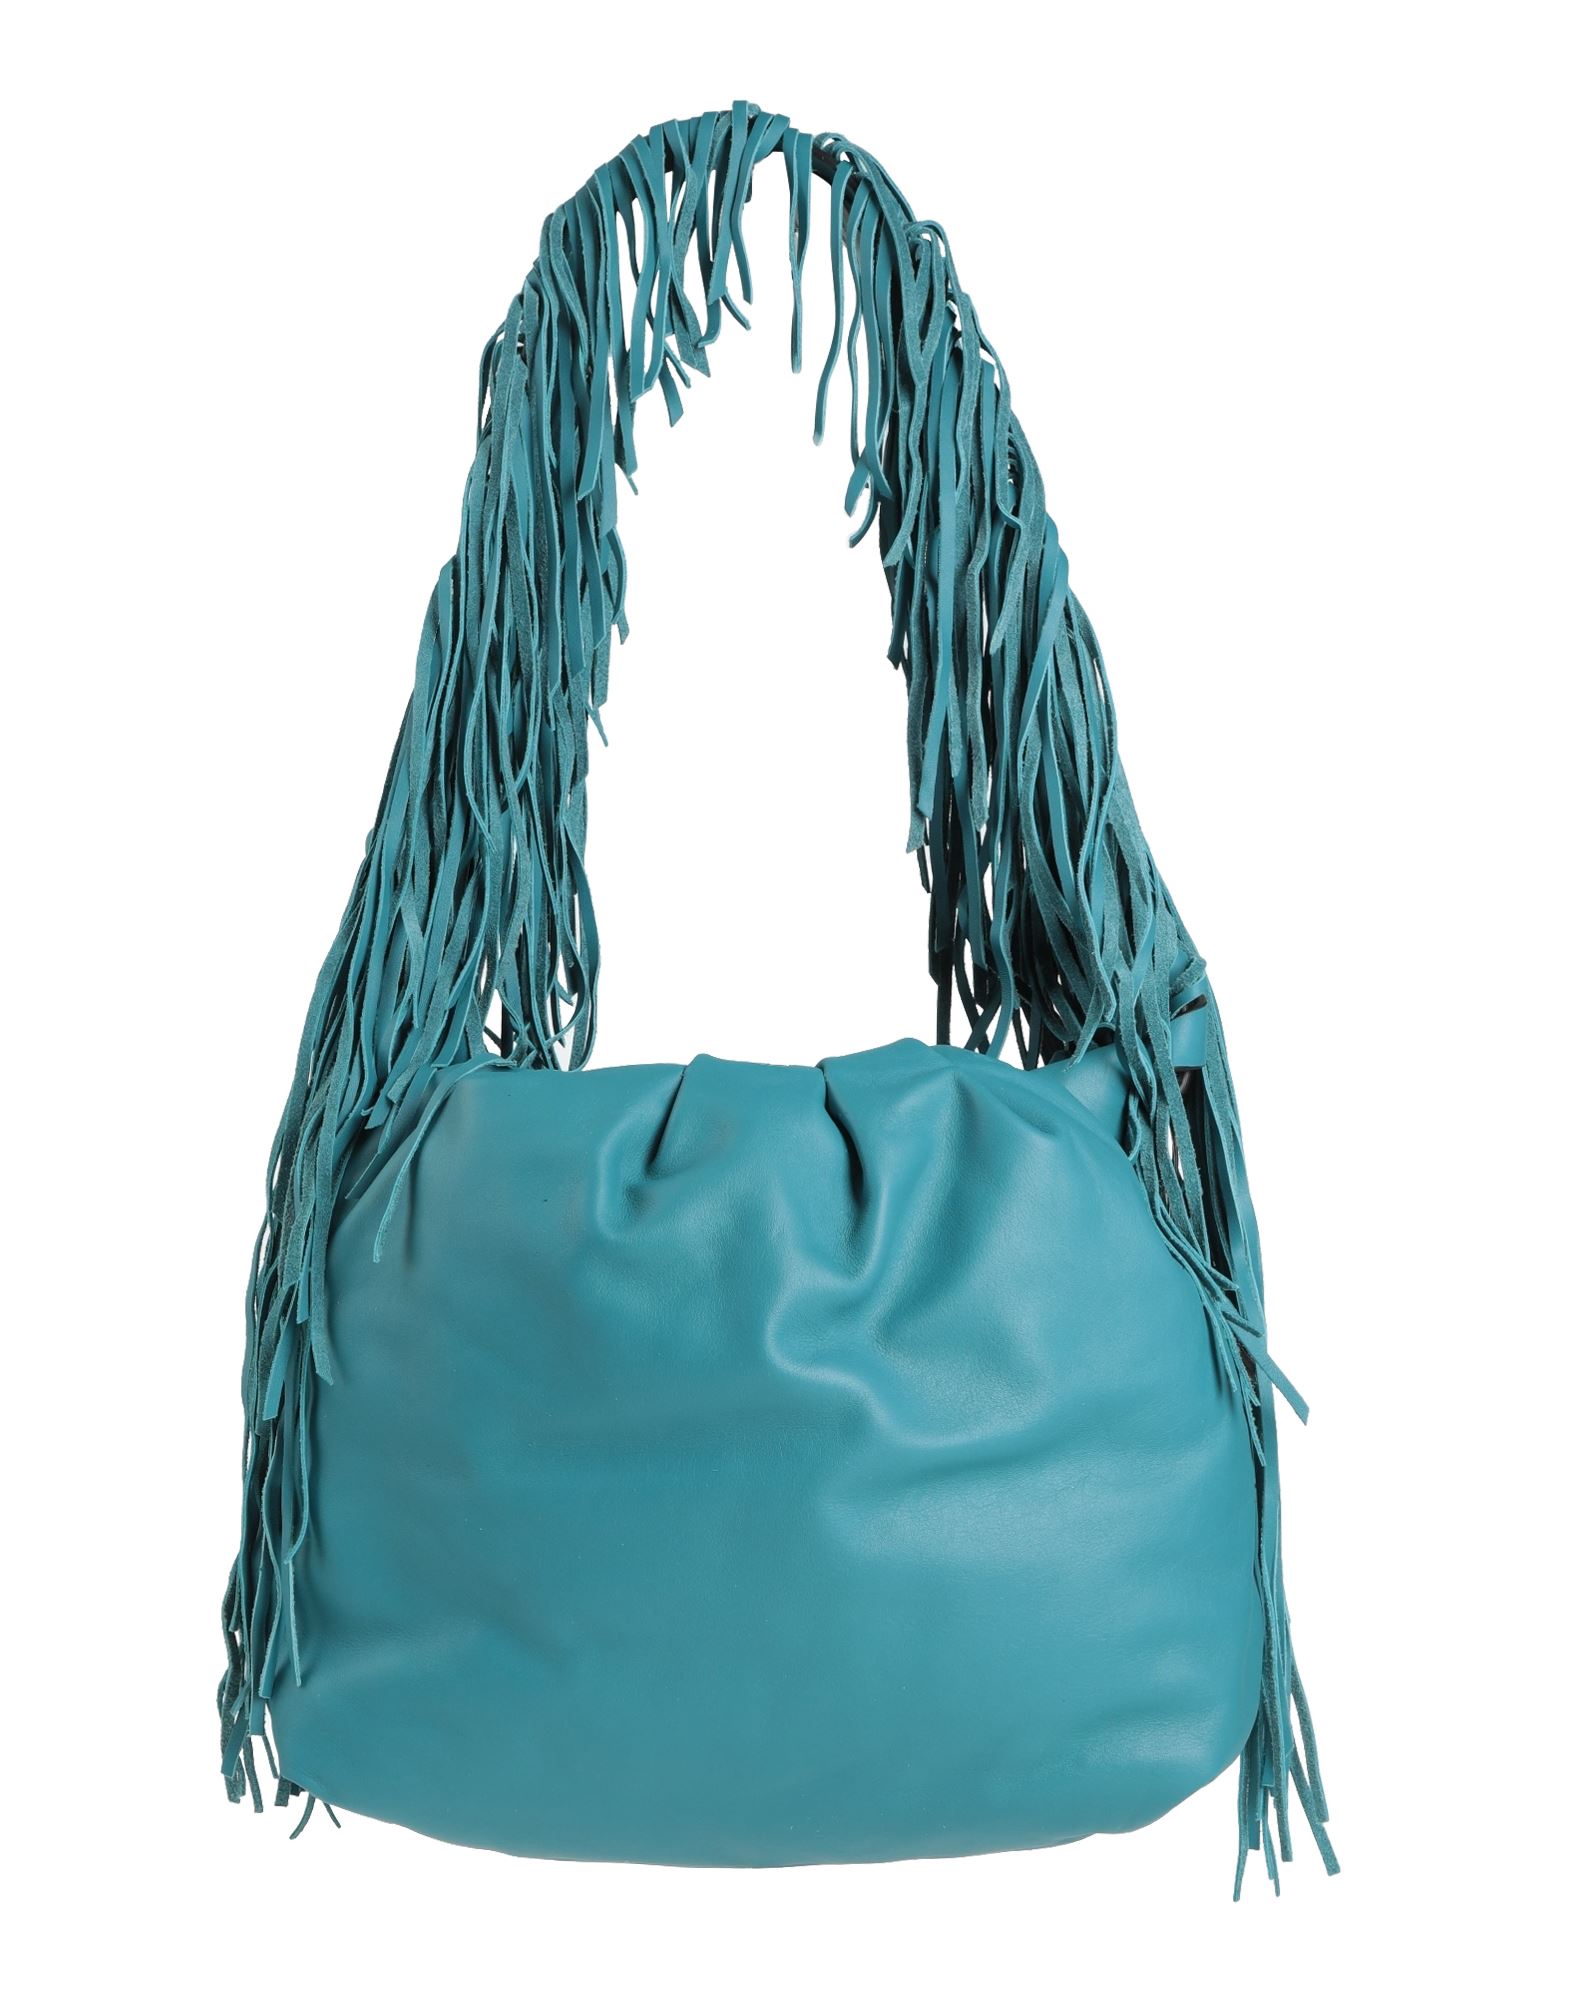 Dorothee Schumacher Handbags In Turquoise